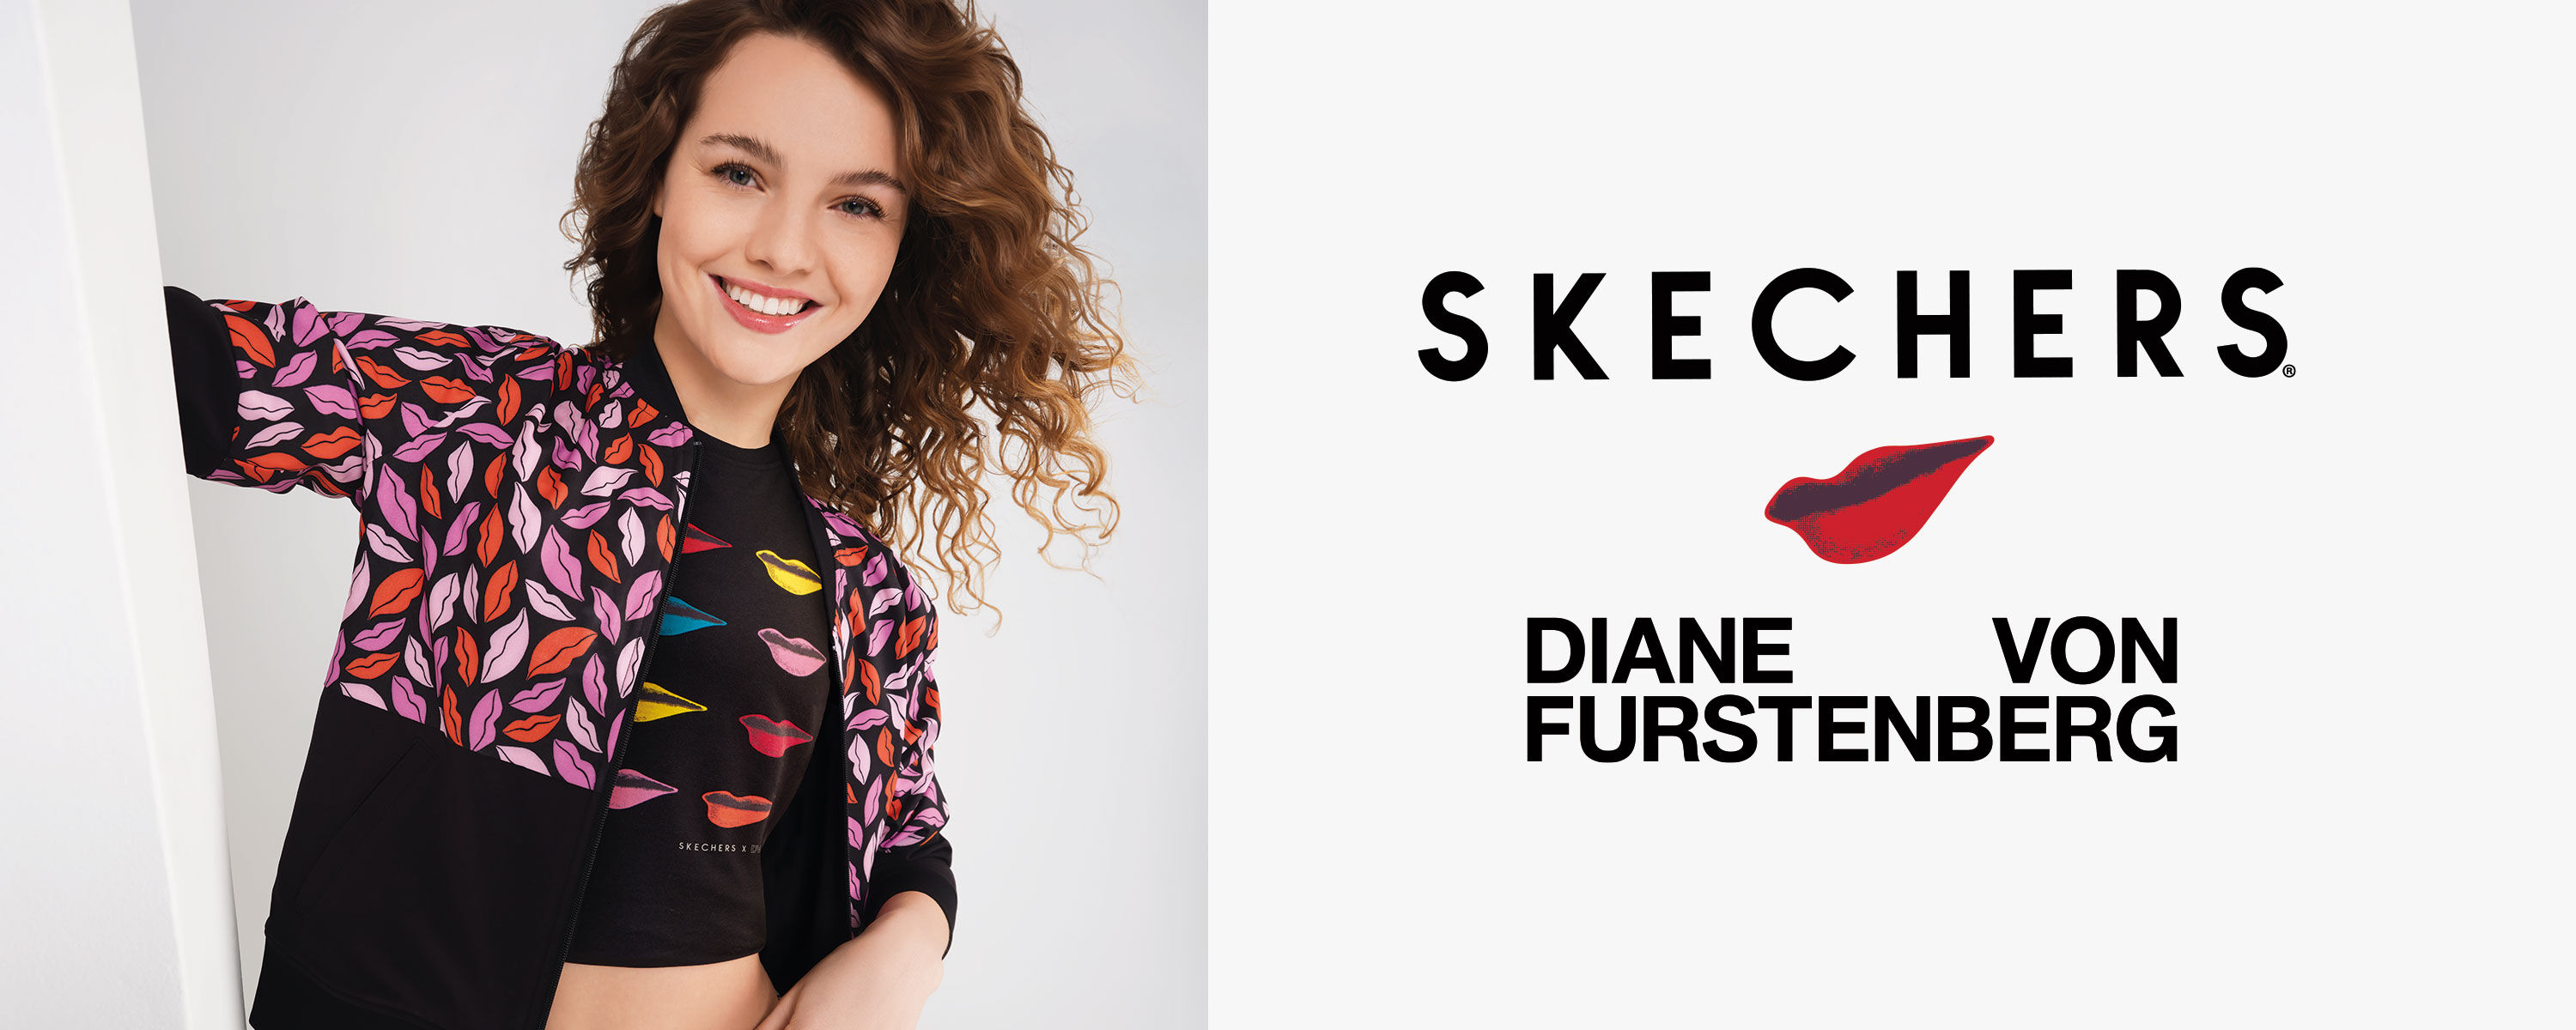 Skechers x Diane von Furstenberg